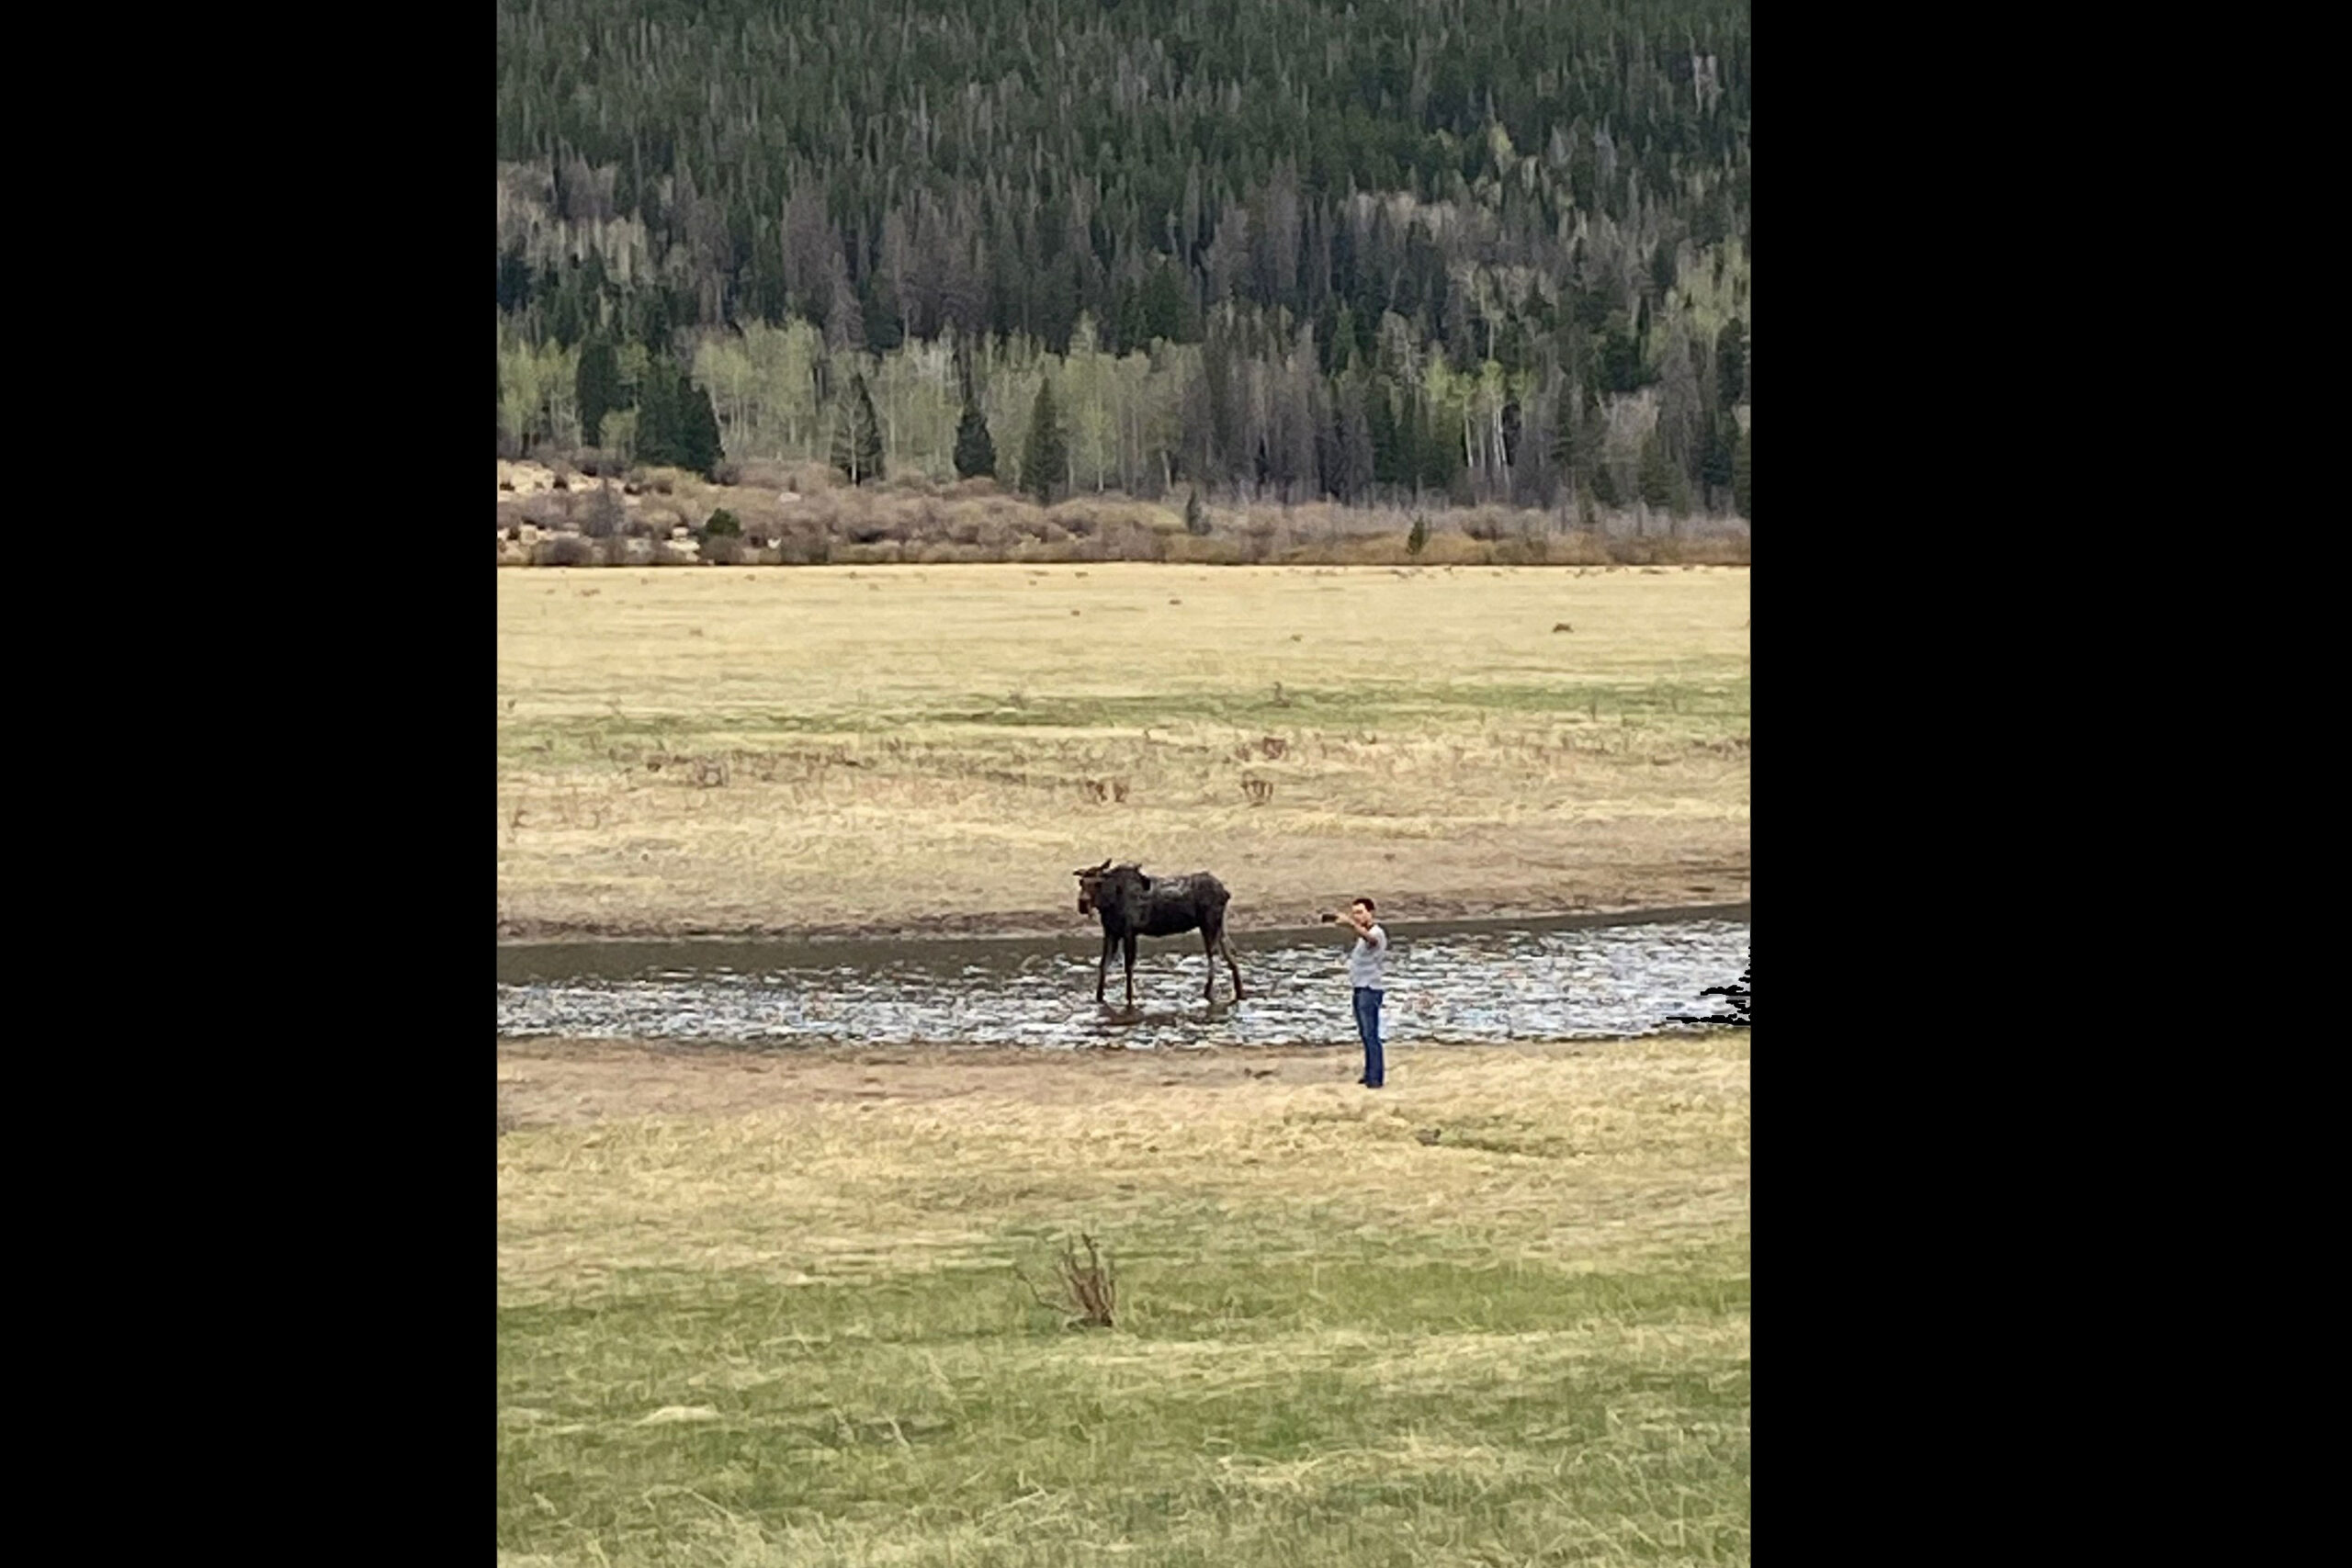 Tourist takes photos with moose.